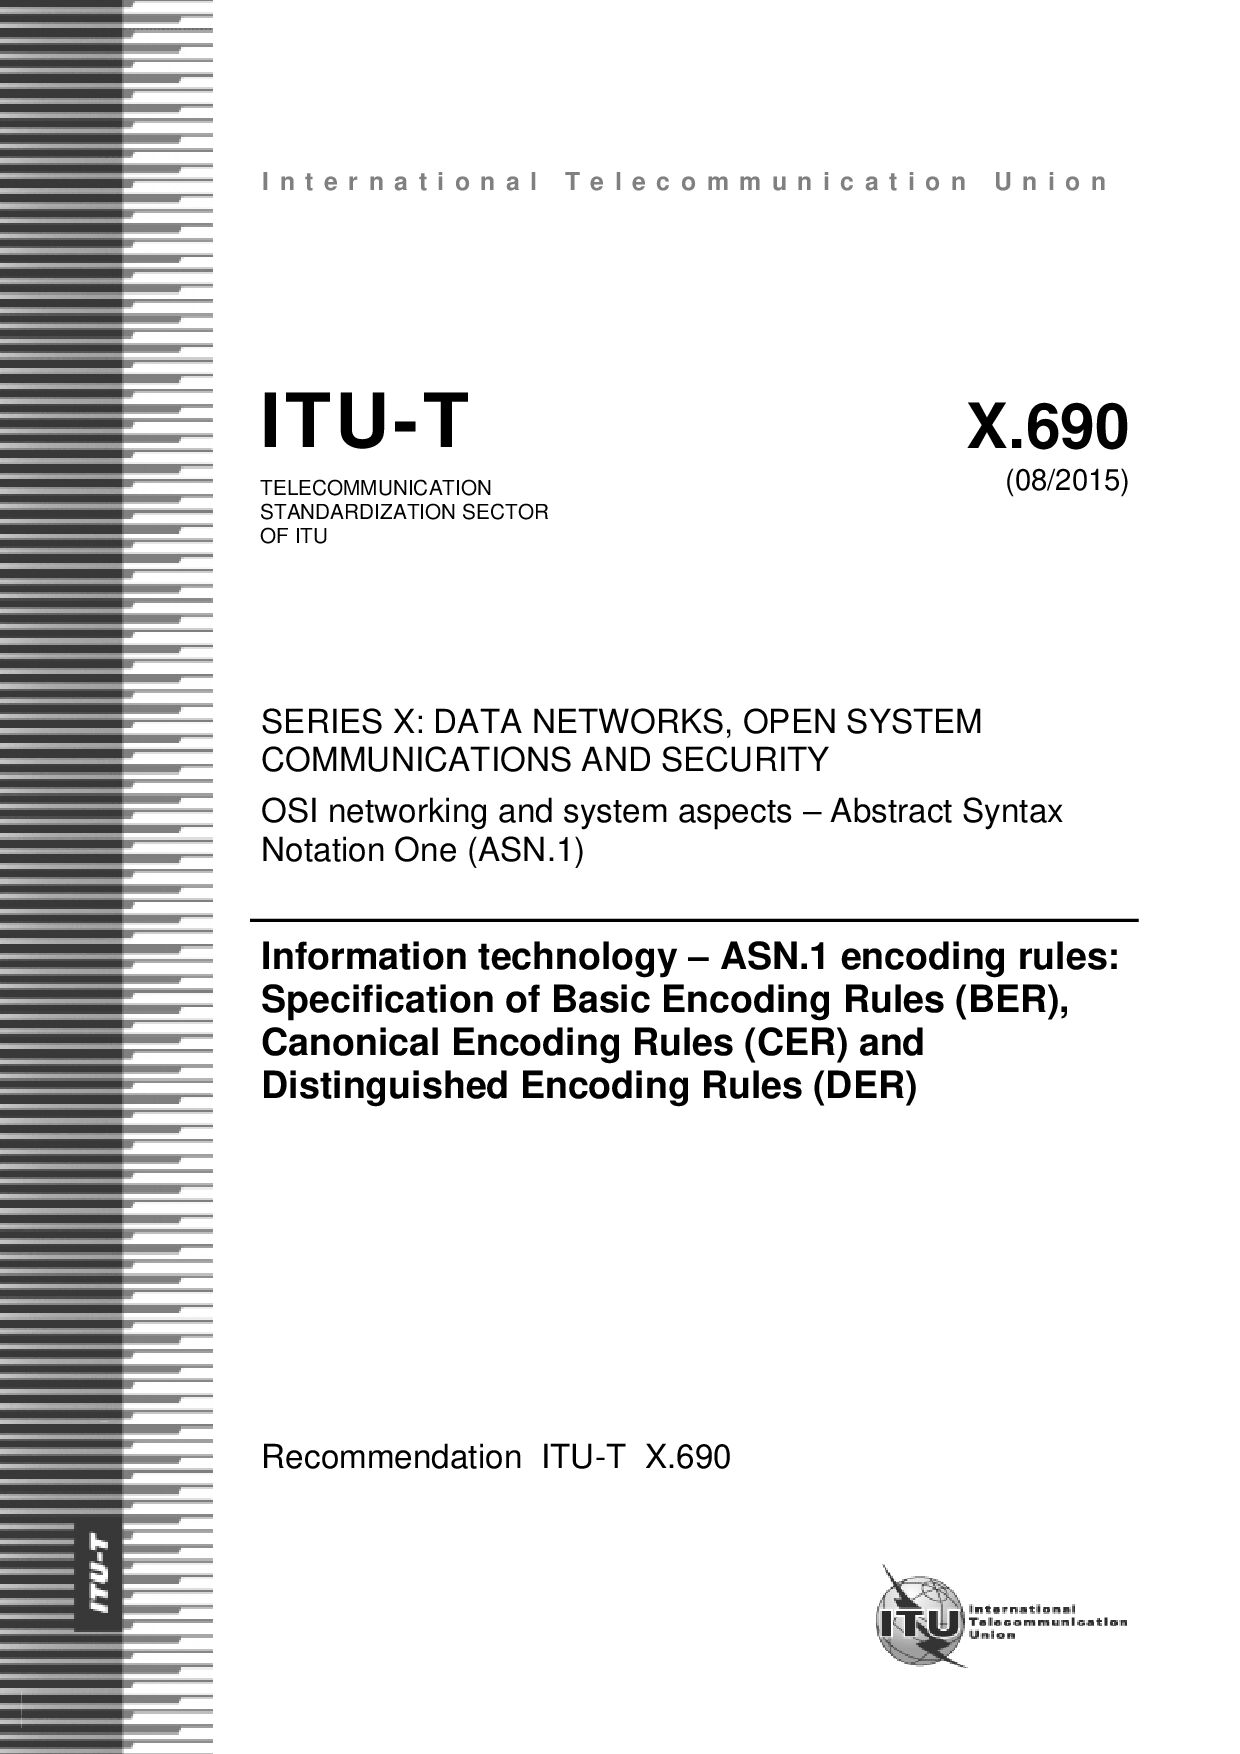 ITU-T X.690-2015